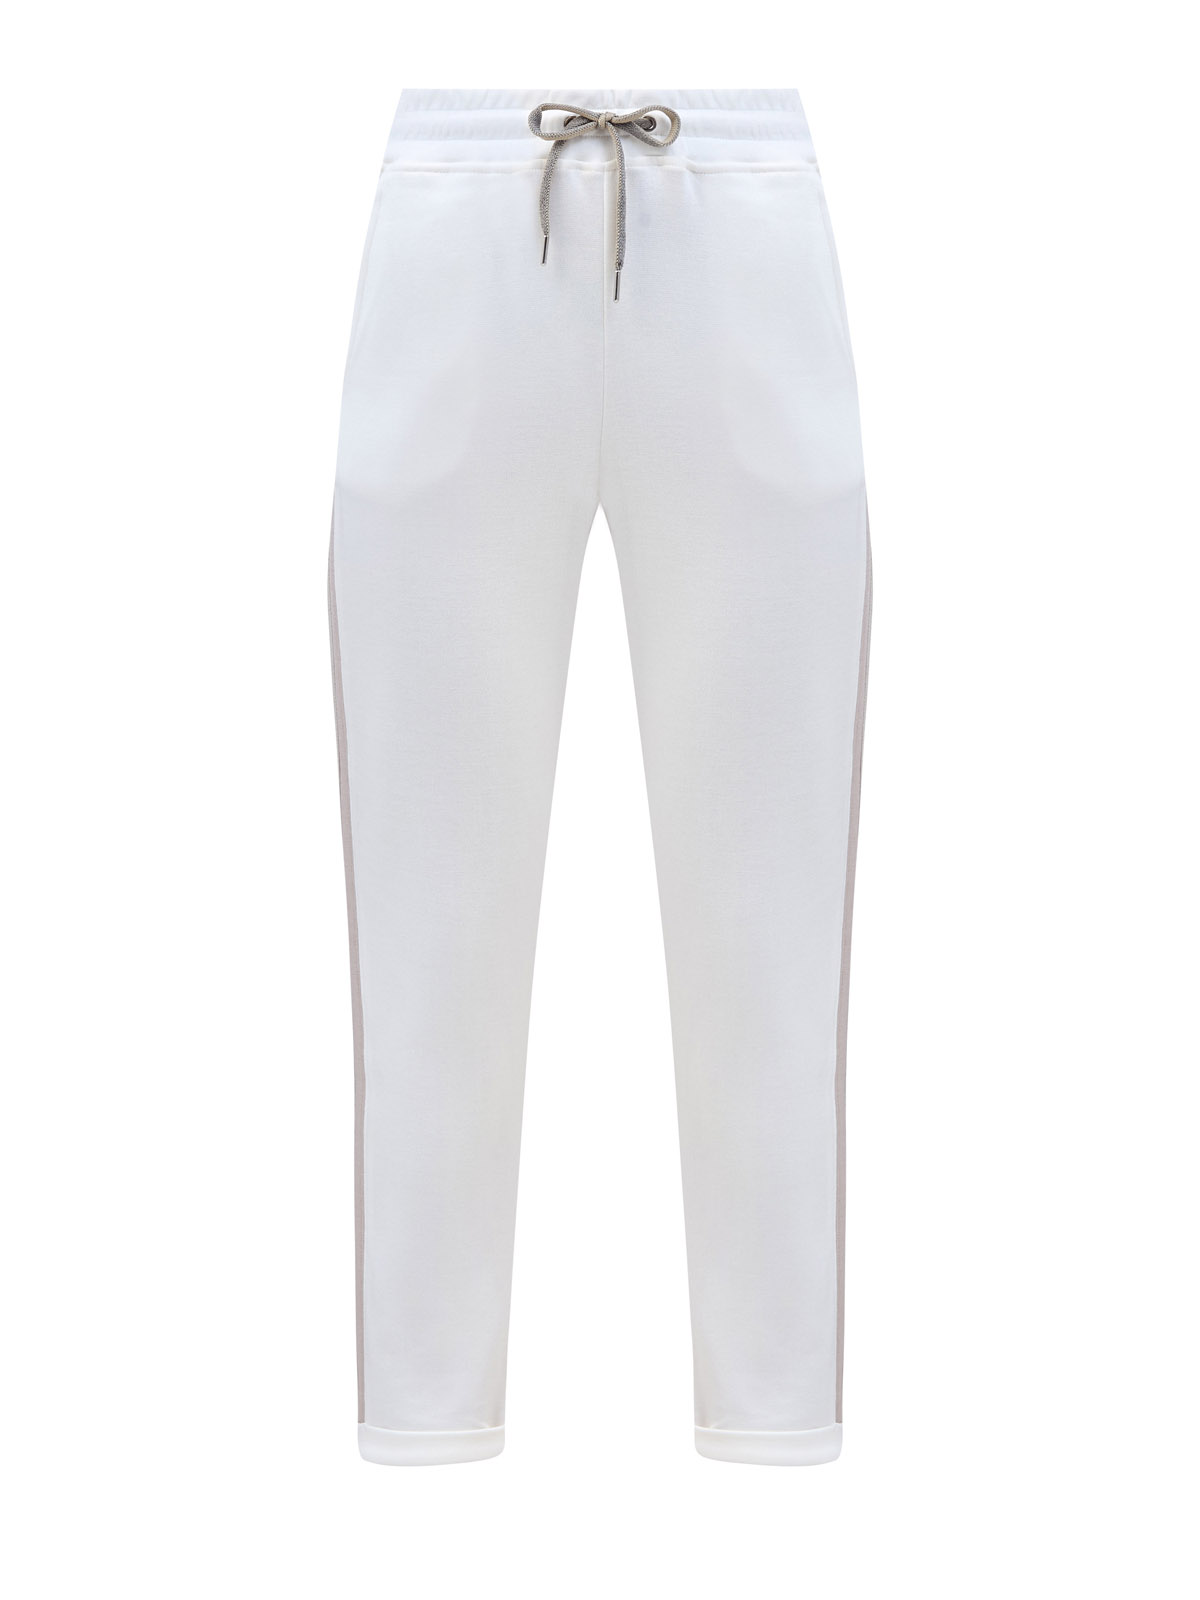 Хлопковые брюки в спортивном стиле с лампасами и поясом на кулиске ELEVENTY, цвет белый, размер 38;40;44 - фото 1